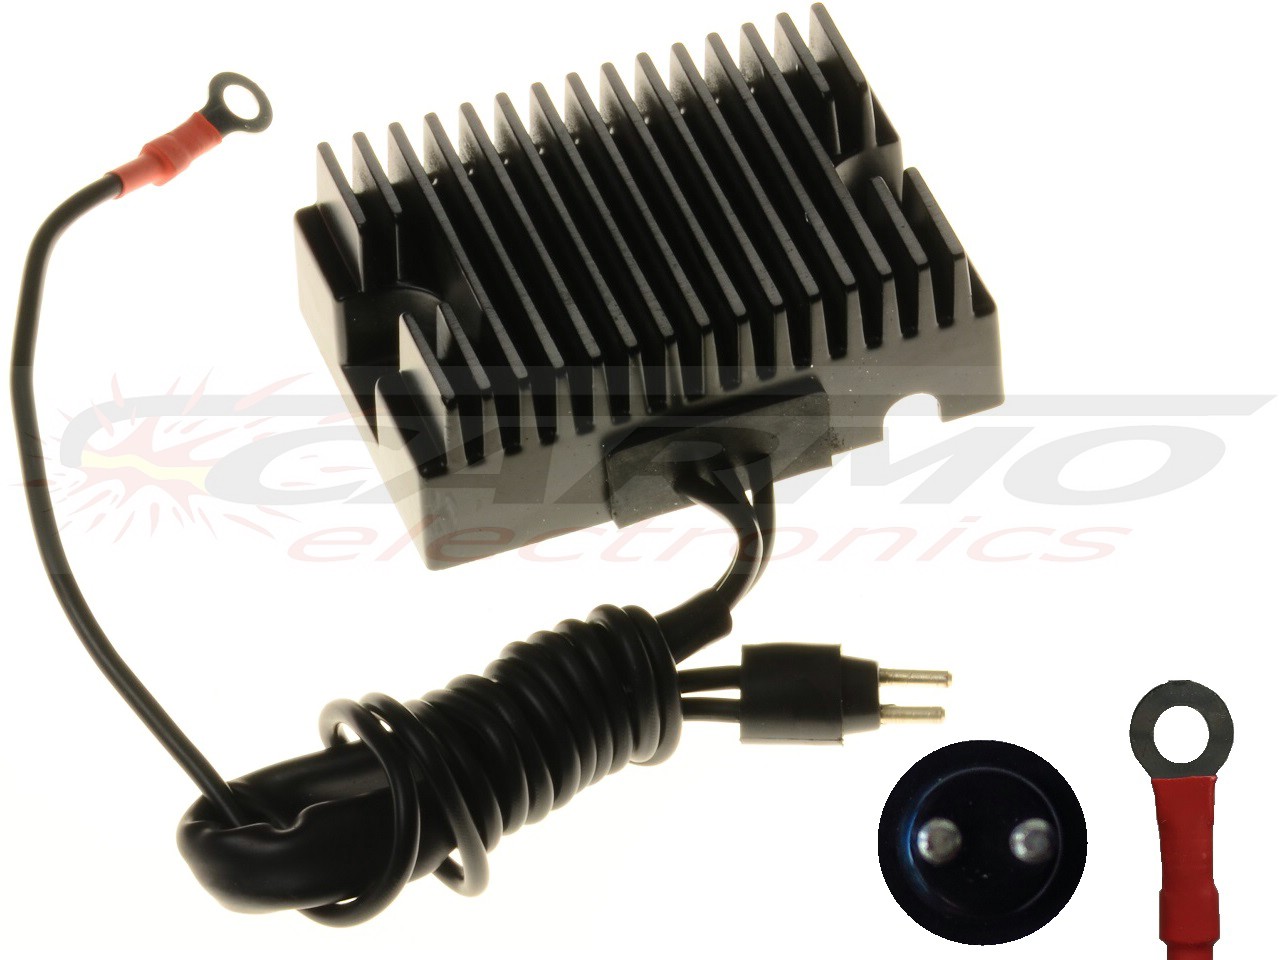 CARR-HARLEY-05JW - Voltage regulator rectifier Harley Davidson Sportster XLH - Click Image to Close